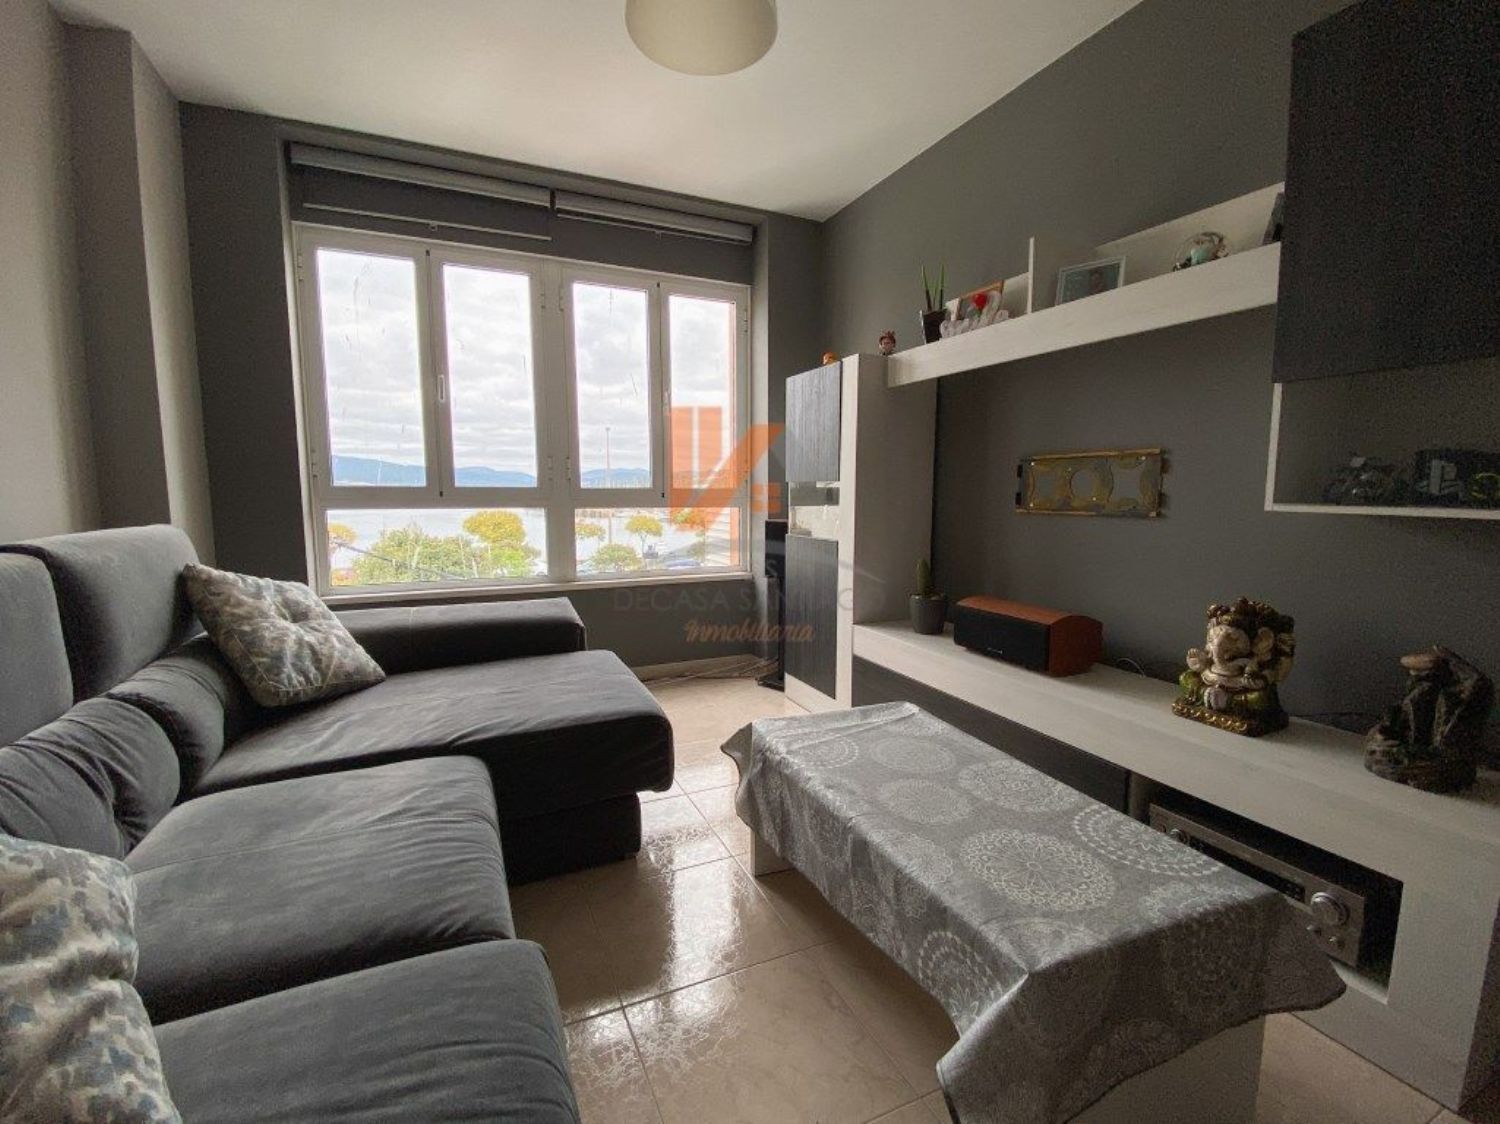 Apartamento en venta en primera línea de mar en Calle Ram,bla en Porto do Son